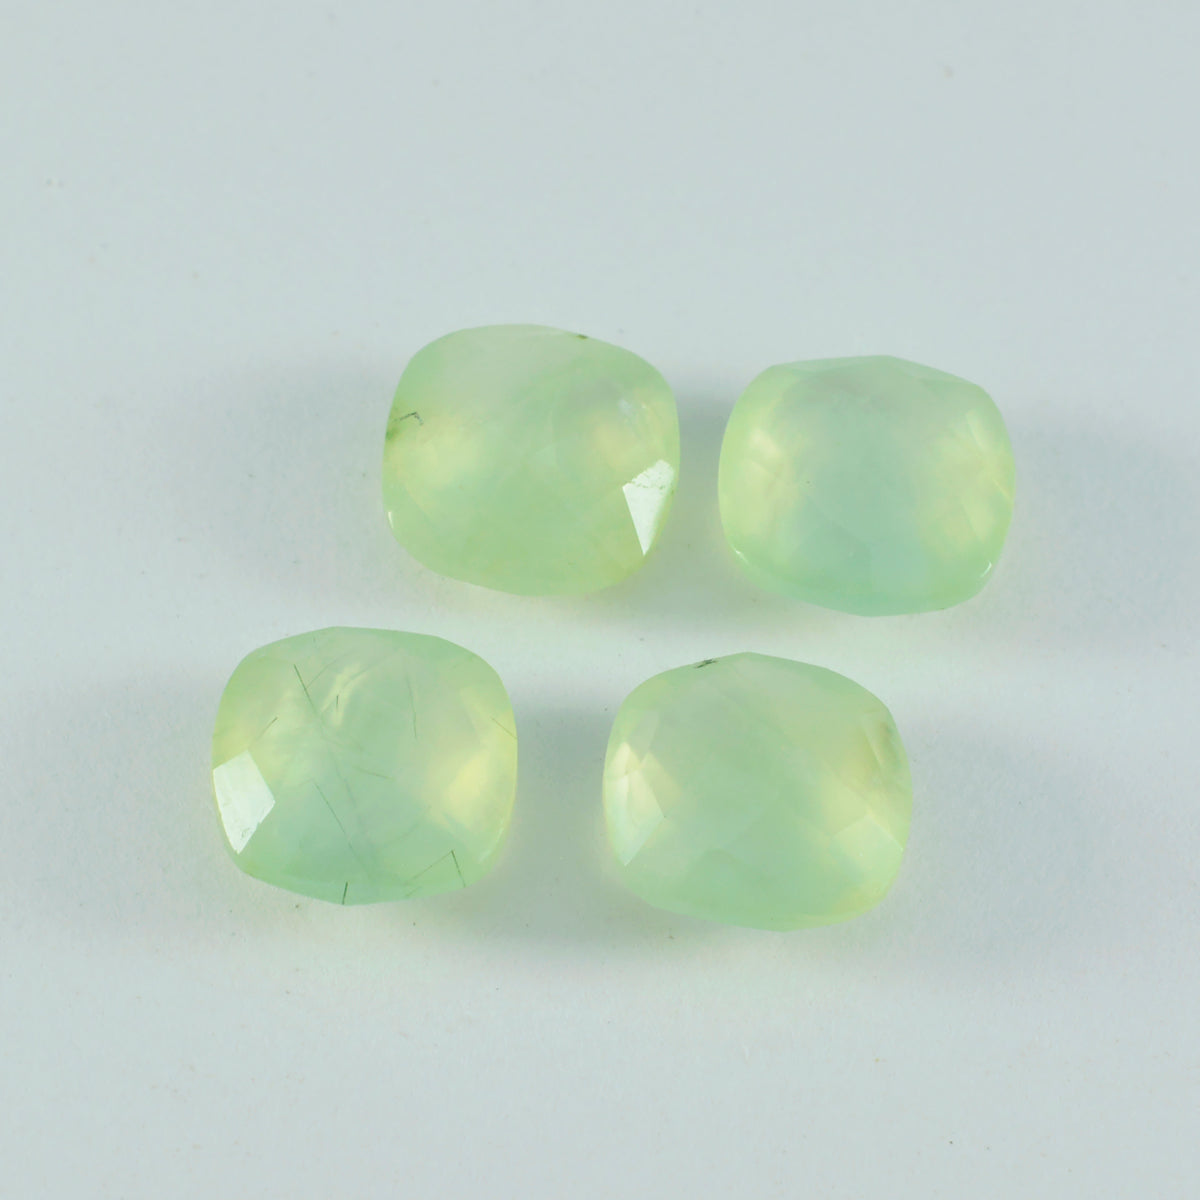 riyogems 1pc グリーン プレナイト ファセット 10x10 mm クッション形状の美しい品質のルース宝石